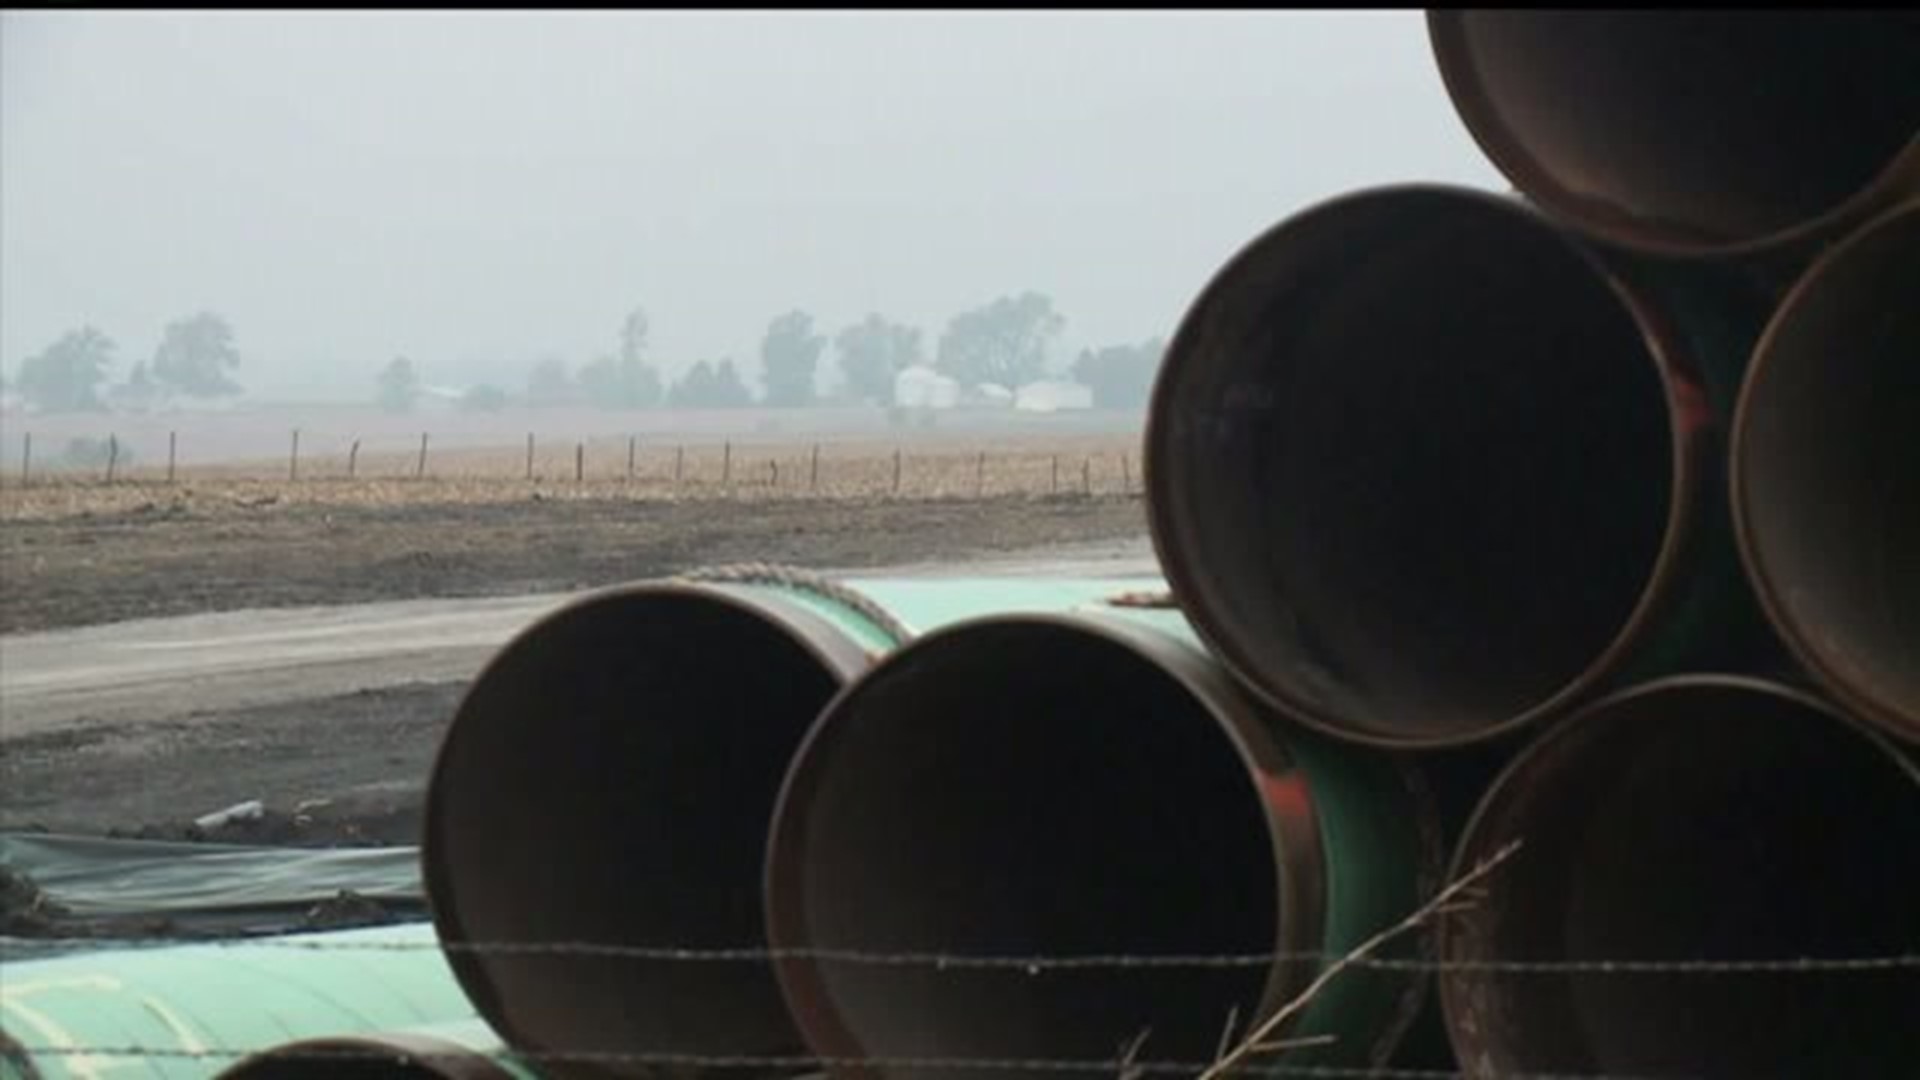 Bakken pipeline approved in Iowa